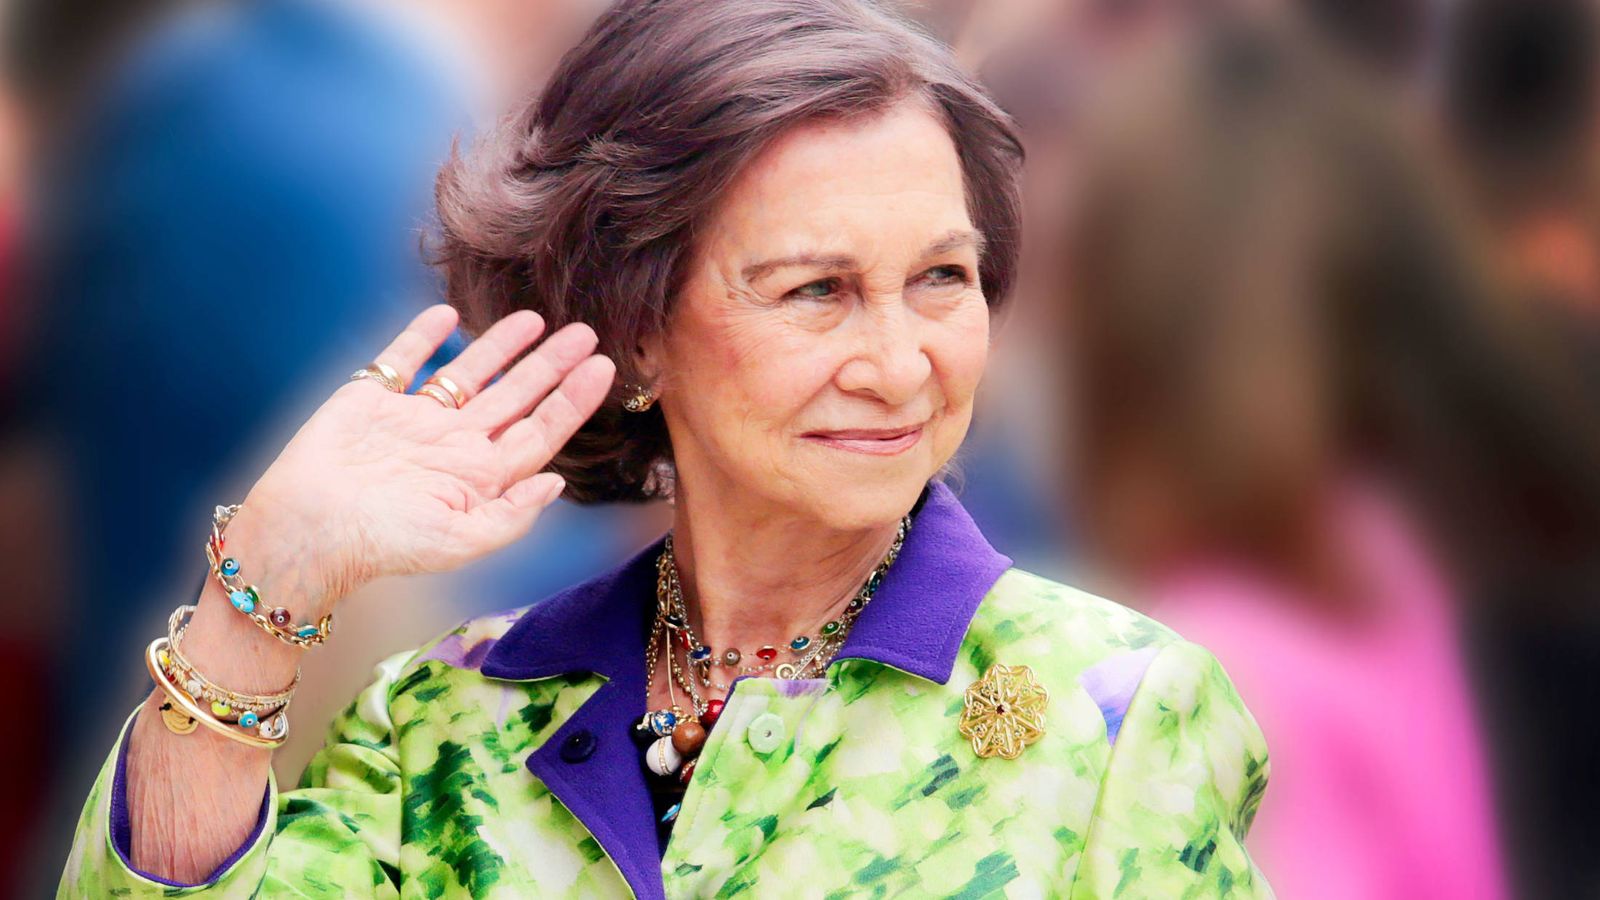 Foto: La reina Sofía, en una imagen de archivo. (Reuters)